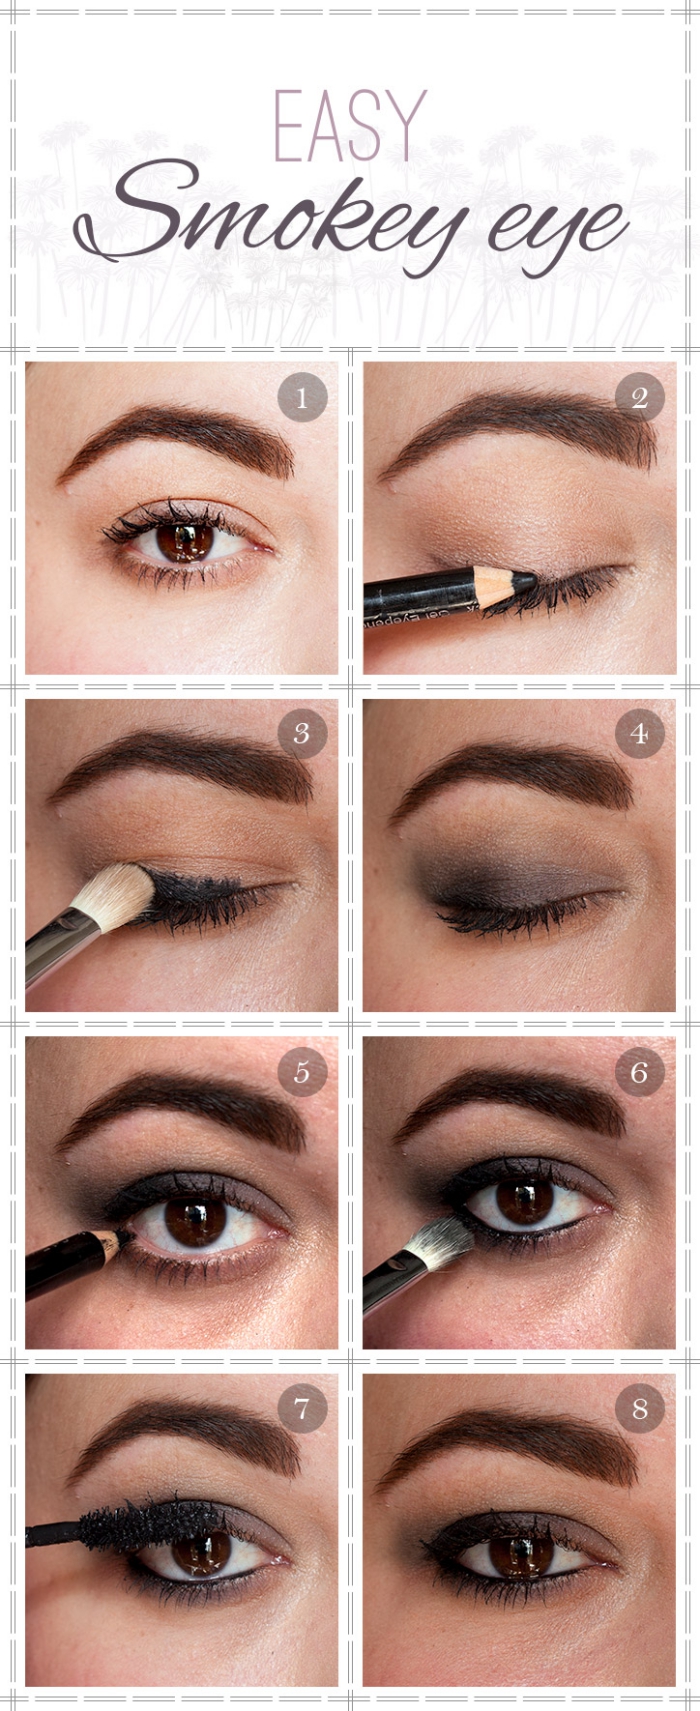 technique maquillage yeux marrons, tutoriel pour appliquer crayon yeux noir et fards à paupières de nuance marron